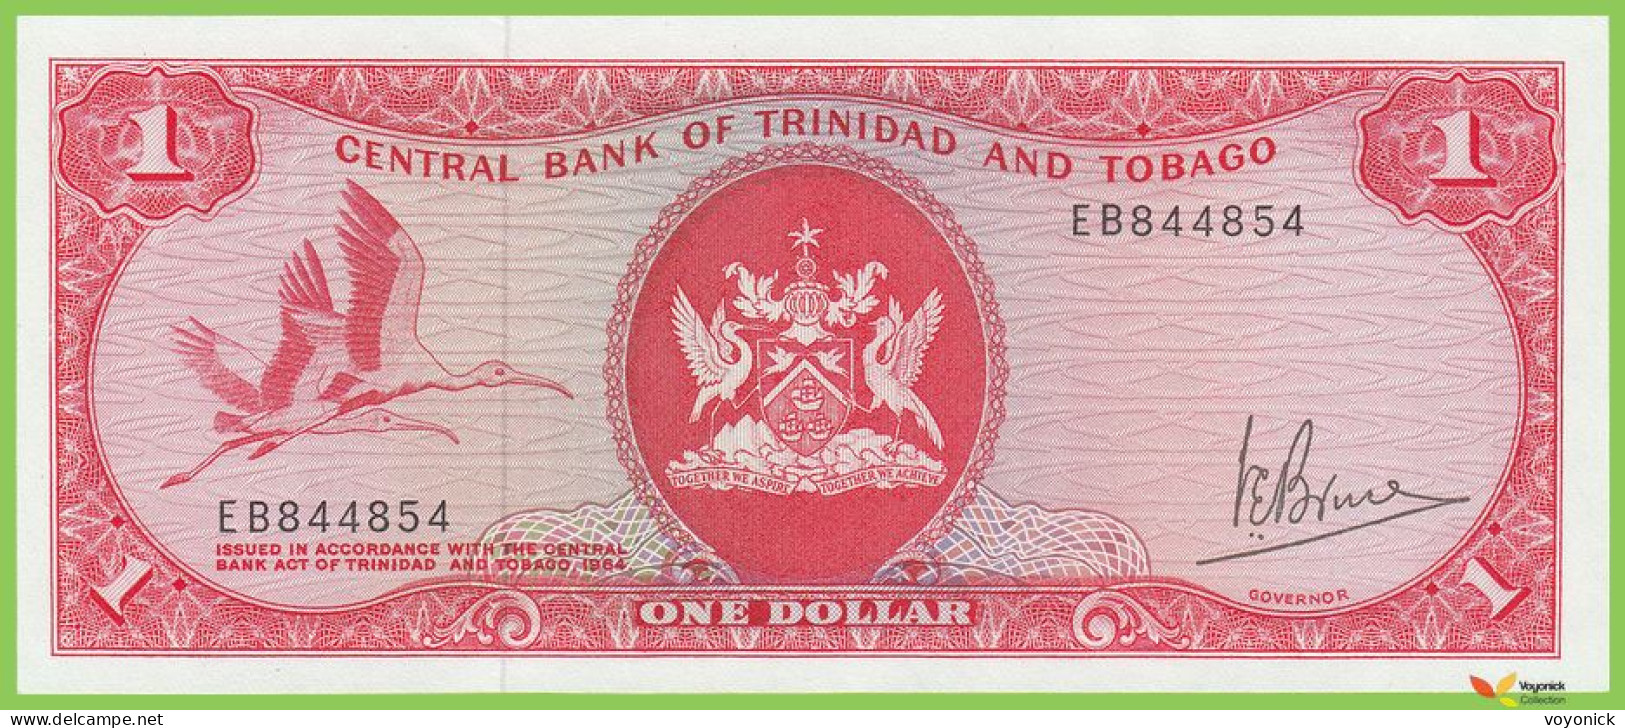 Voyo TRINIDAD & TOBAGO 1 Dollar L1964(1977) P30a B205a EB 844854  UNC - Trindad & Tobago